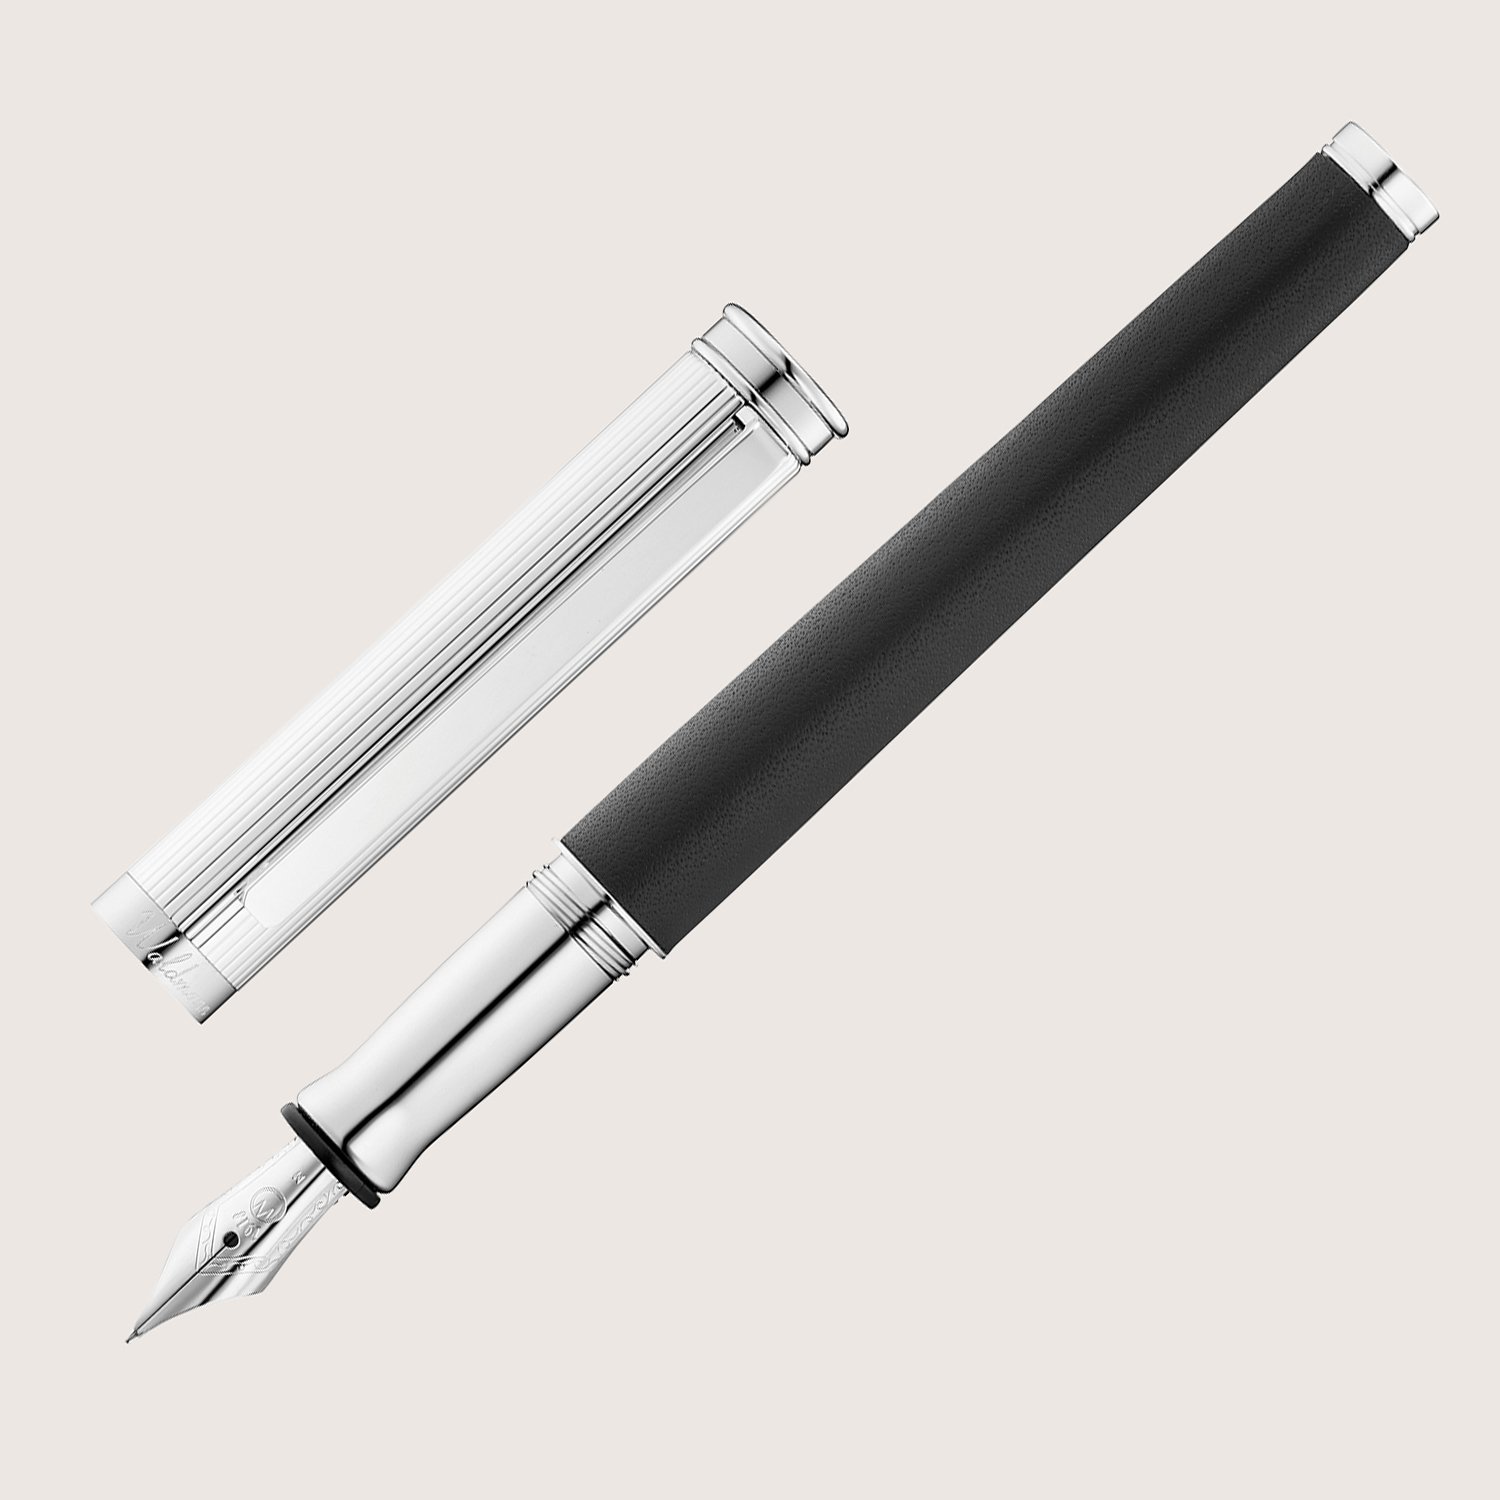 SOLON Füllfederhalter mit Edelstahlfeder EF Silber Linien-Design Nappaleder schwarz